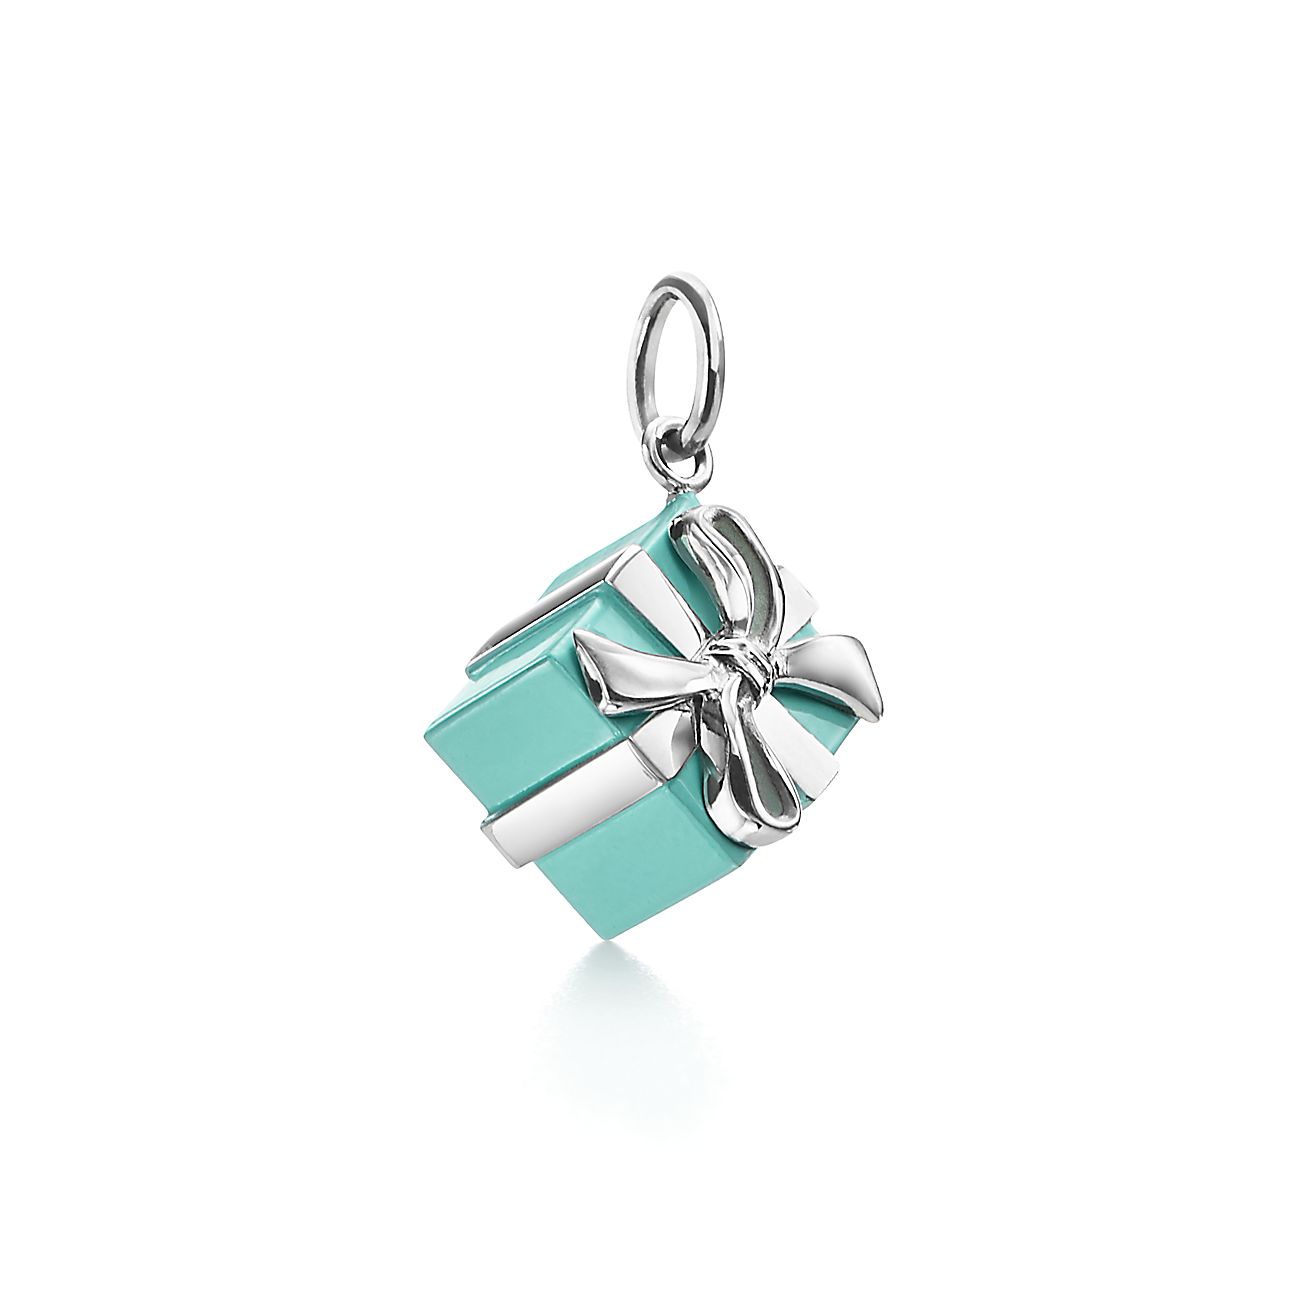 Tiffany Blue Box® charm in sterling silver with Tiffany Blue® enamel  finish.